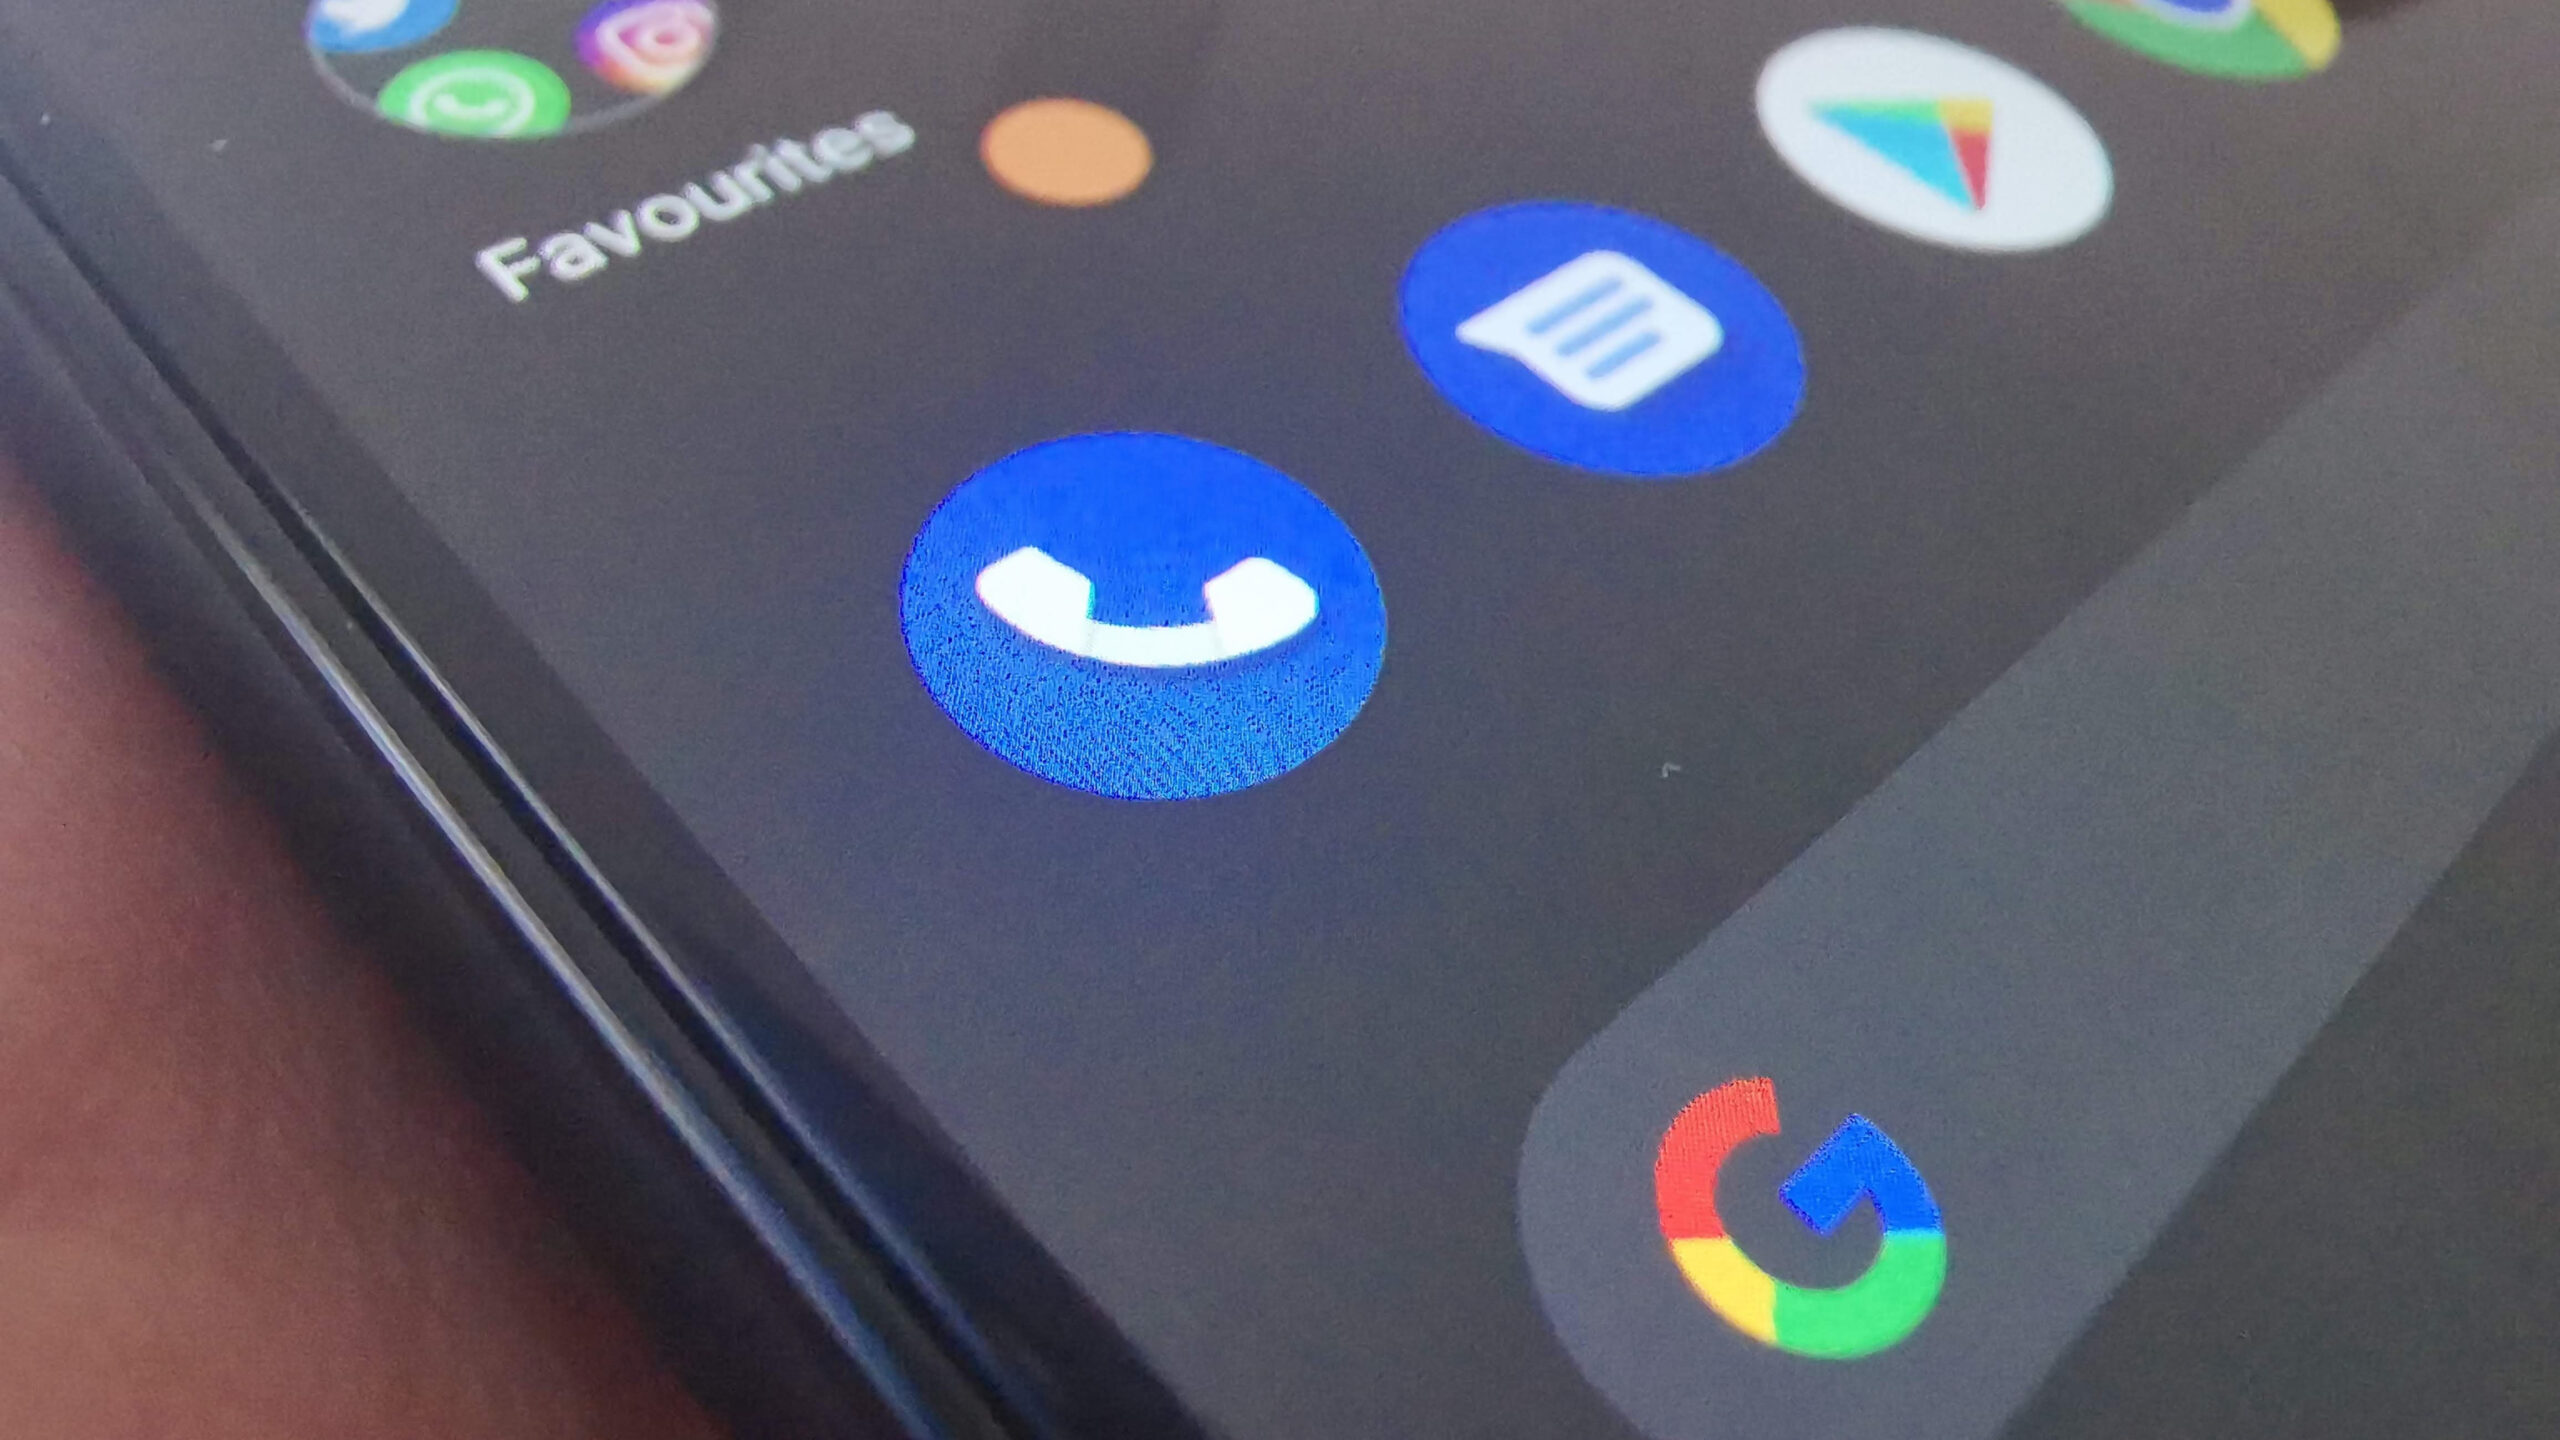 Google un numero: L'applicazione Google Phone sta testando una nuova funzione: la ricerca di un numero sconosciuto.